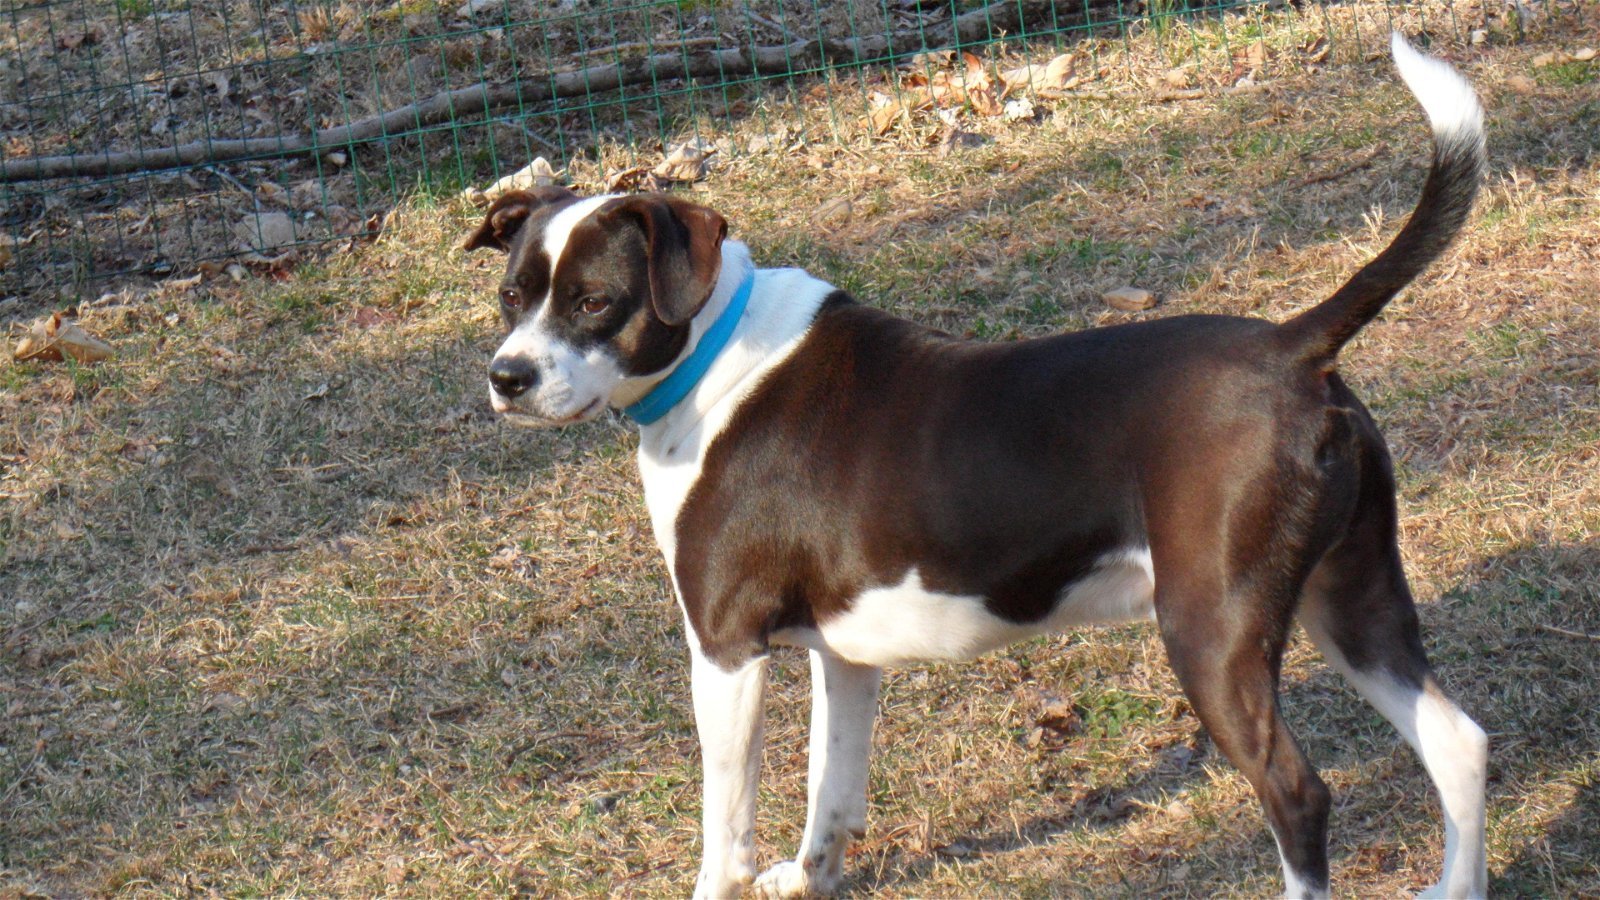 halv otte klinge indgang Dog for adoption - MJ, a Boston Terrier & Beagle Mix in Pittstown, NJ |  Petfinder